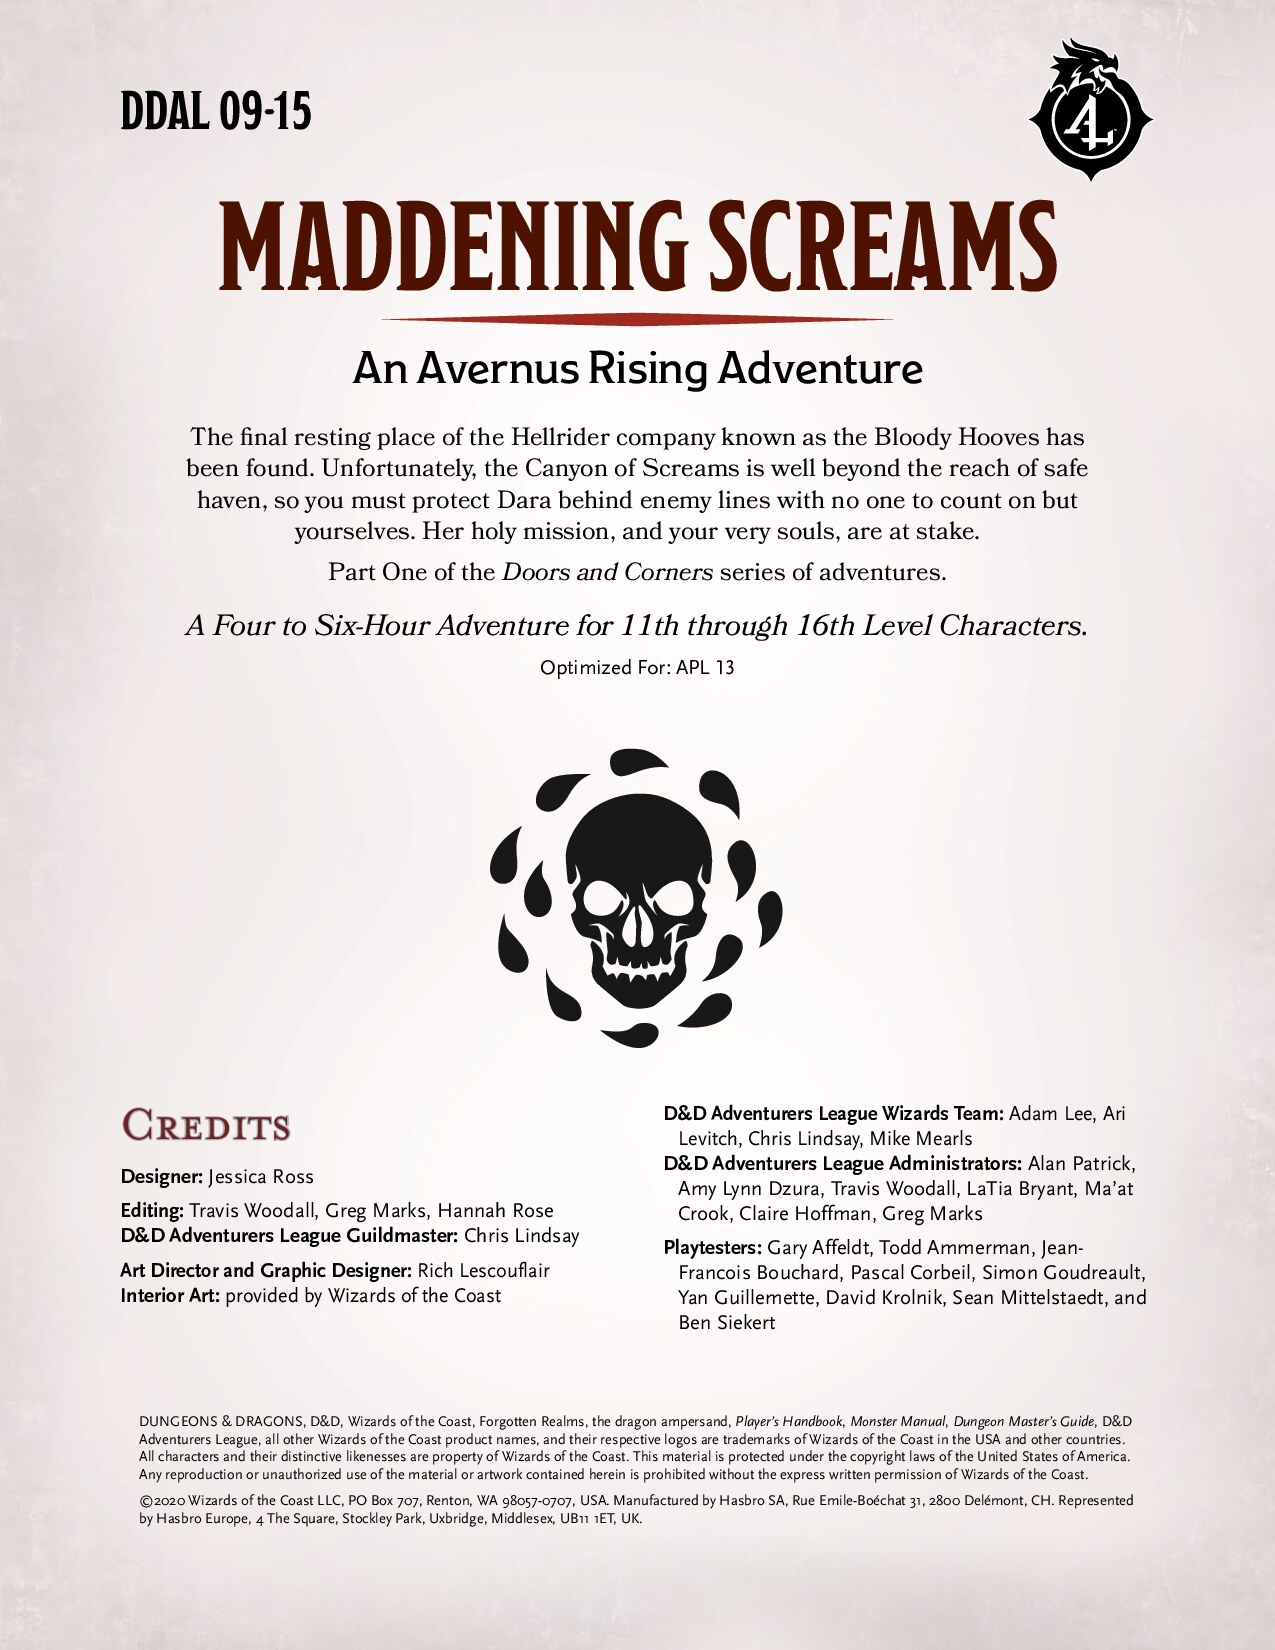 DDAL09-15 - Maddening Screams